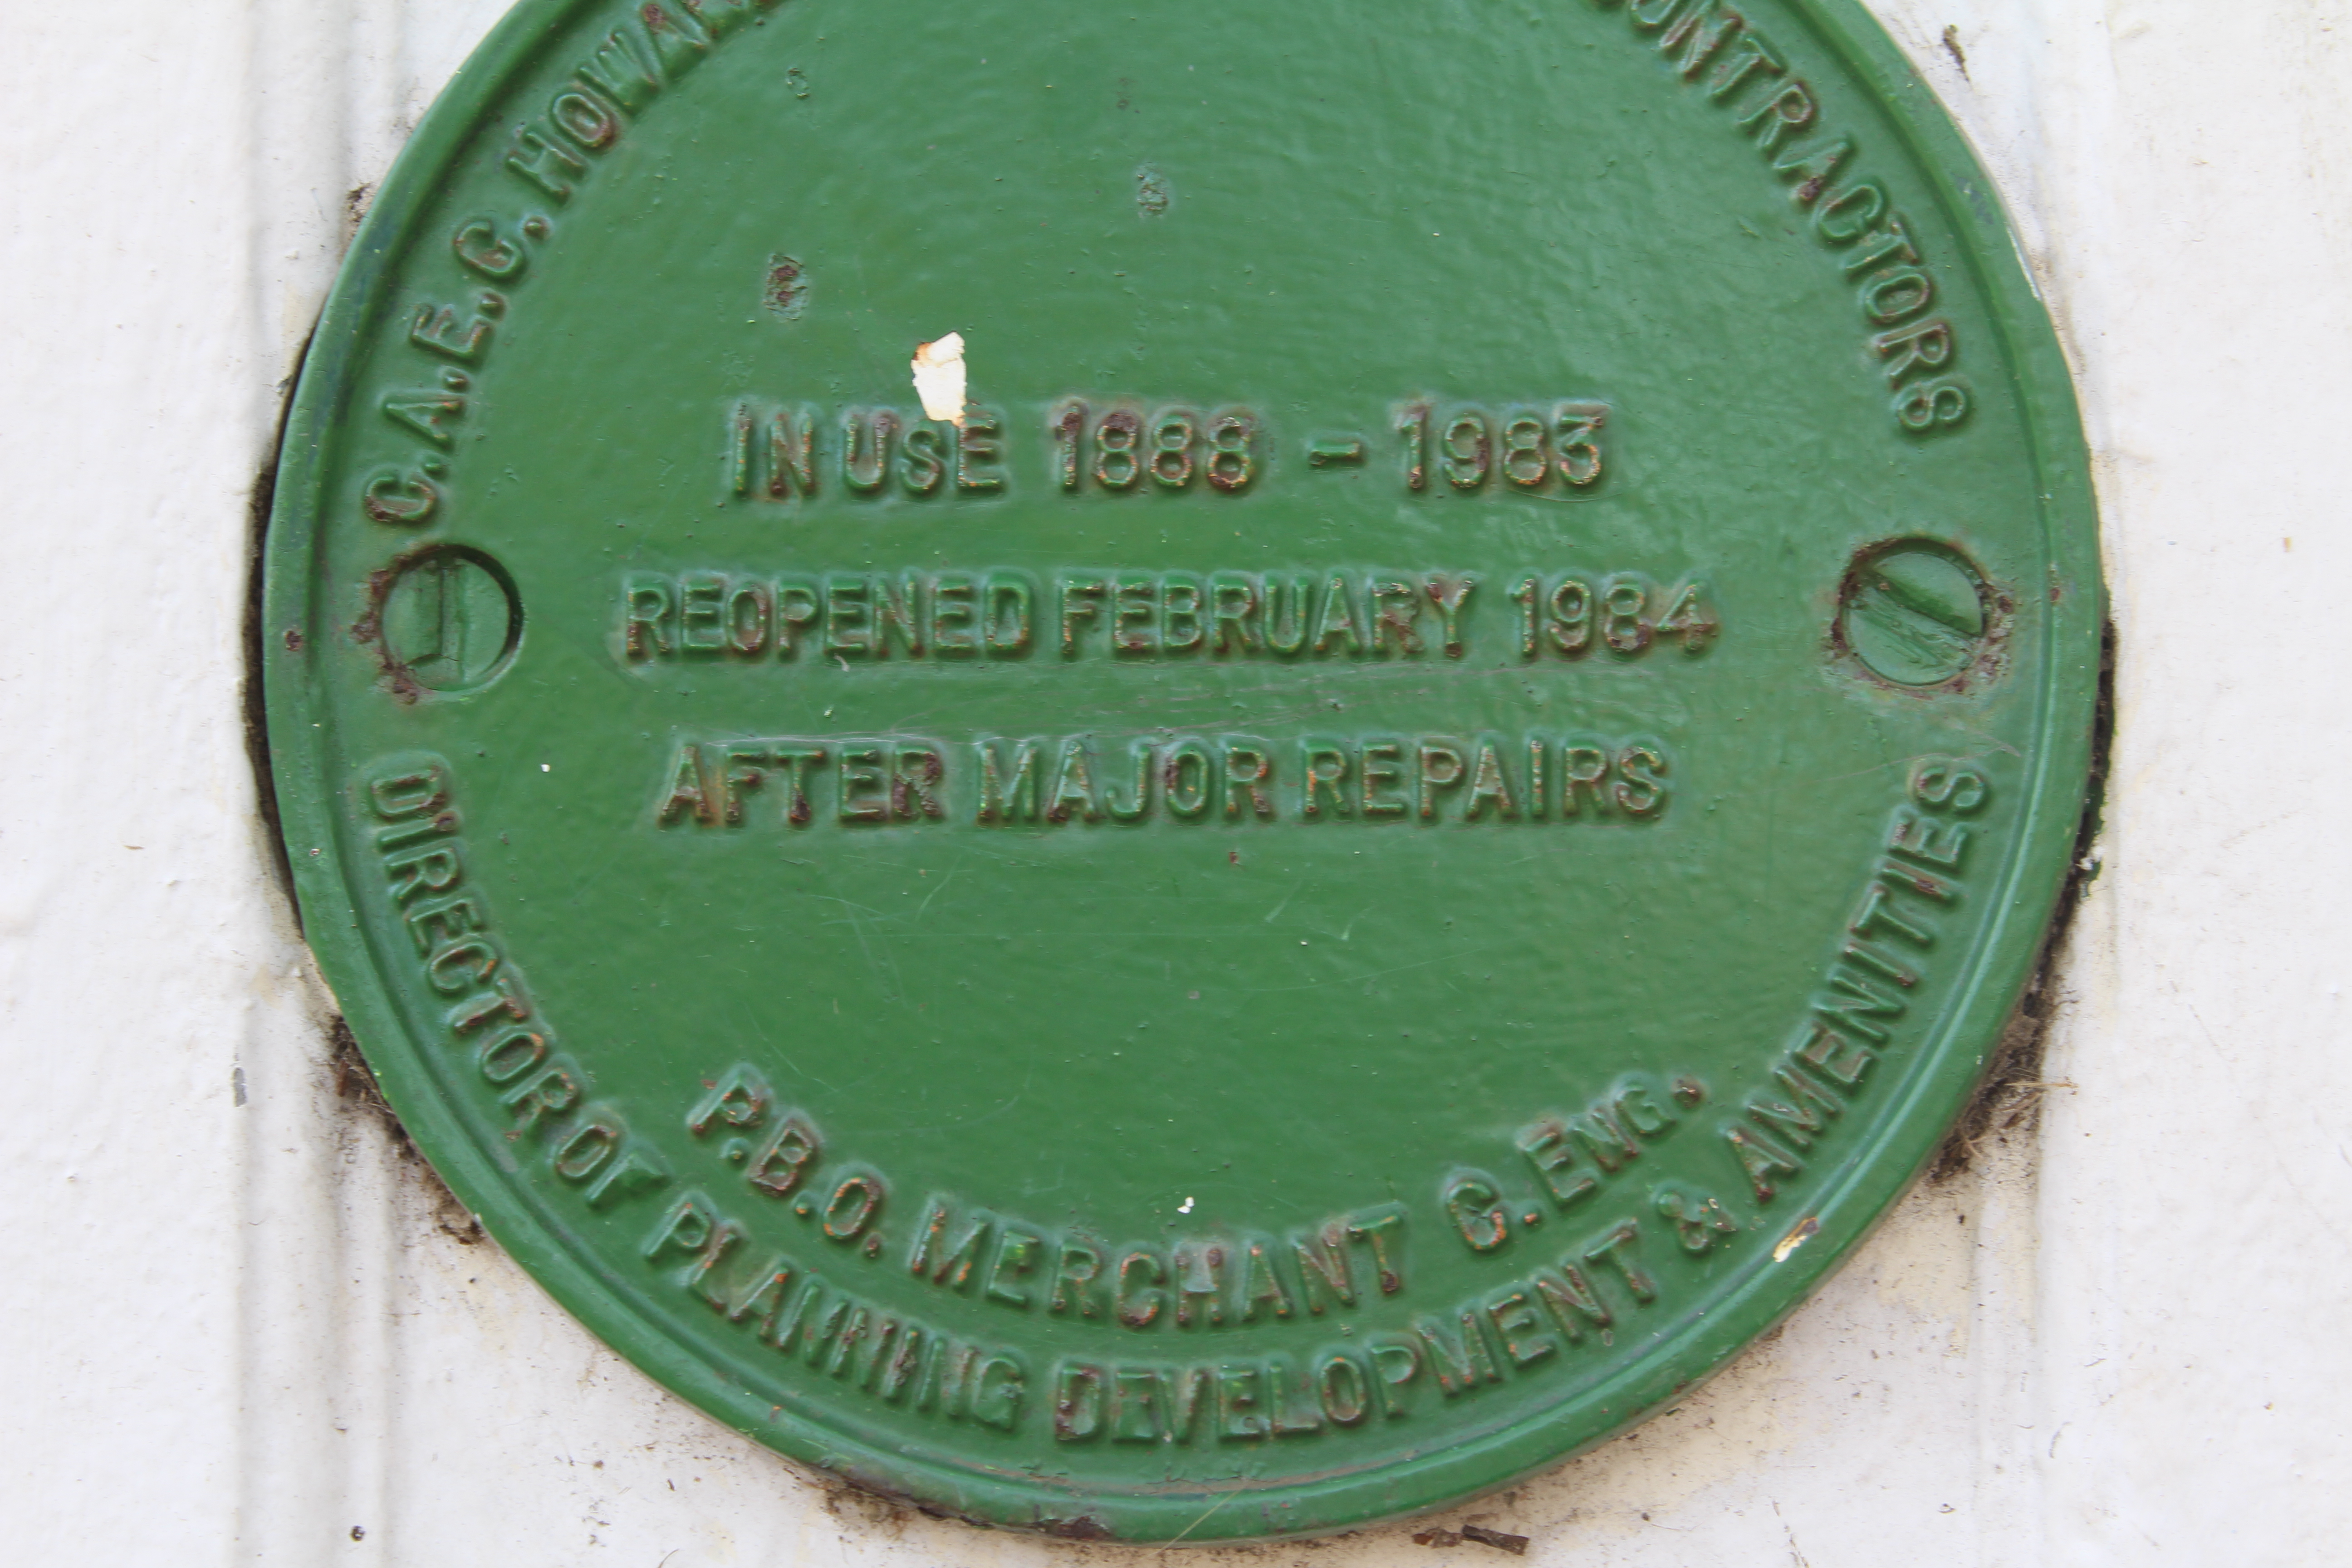 Suspension Bridge reopening engineers commemorative plaque